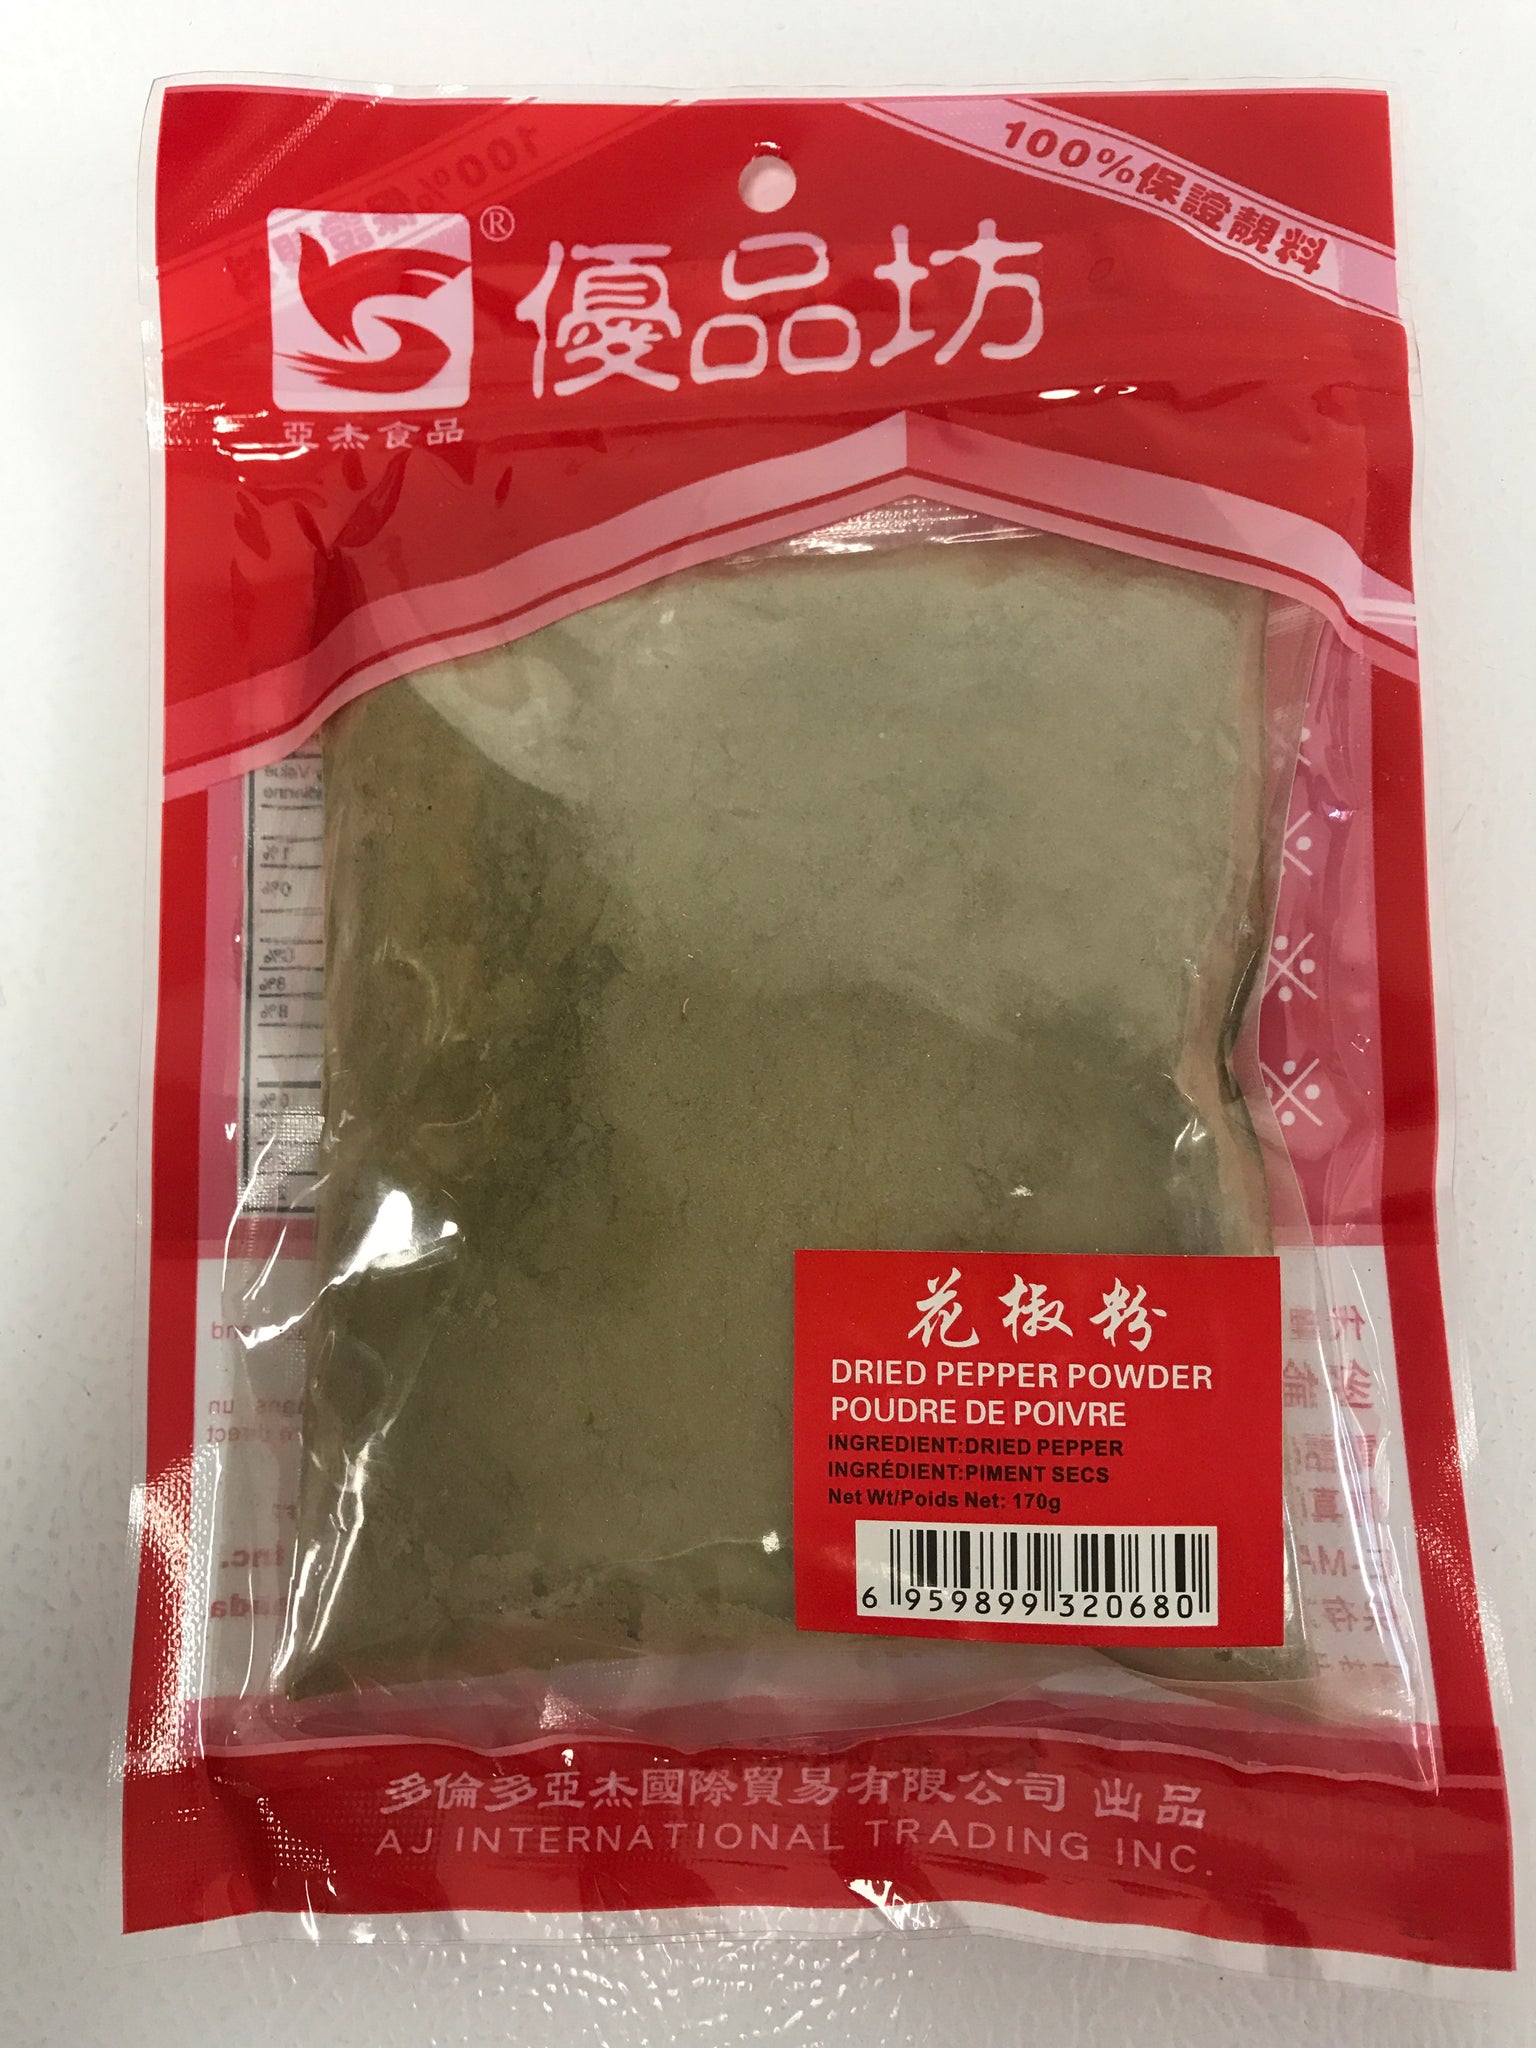 花椒粉 dried pepper powder